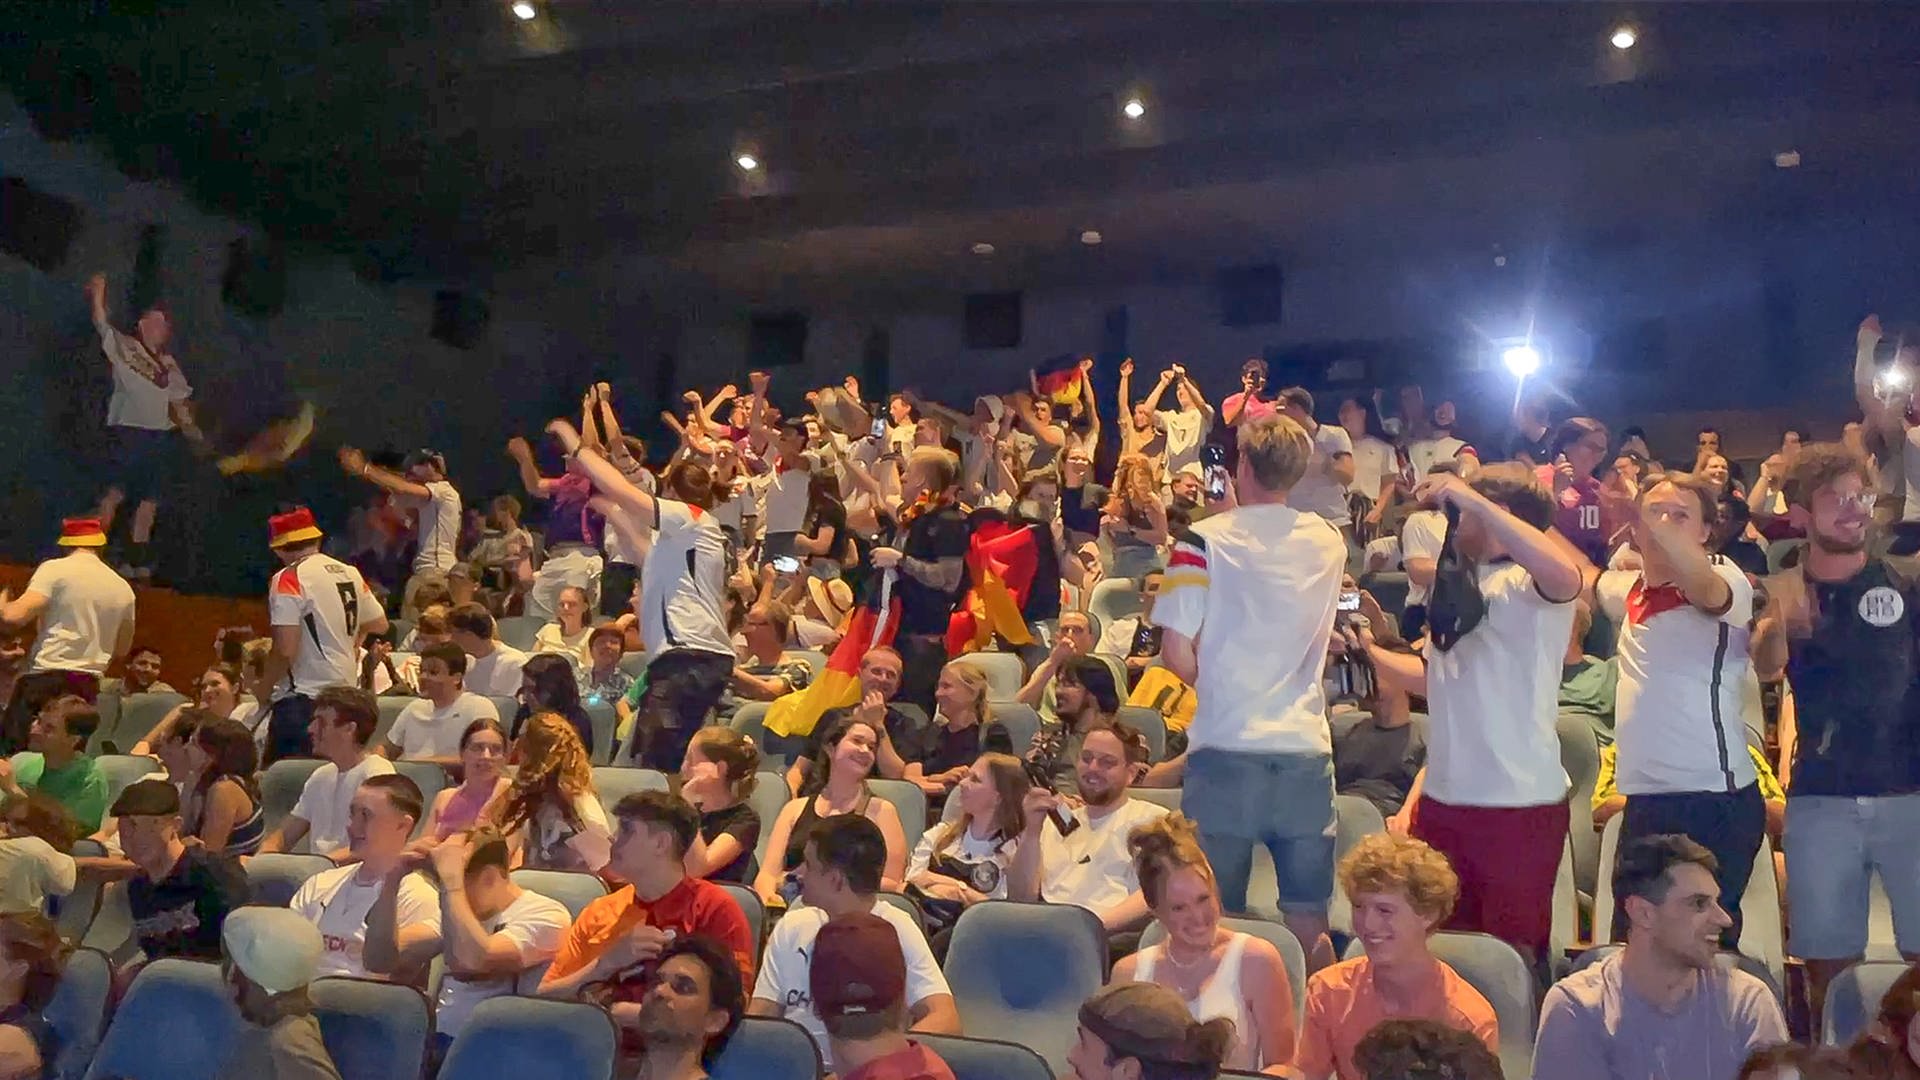 Public Viewing im Kino: Kommt da Fußball-Stimmung auf?